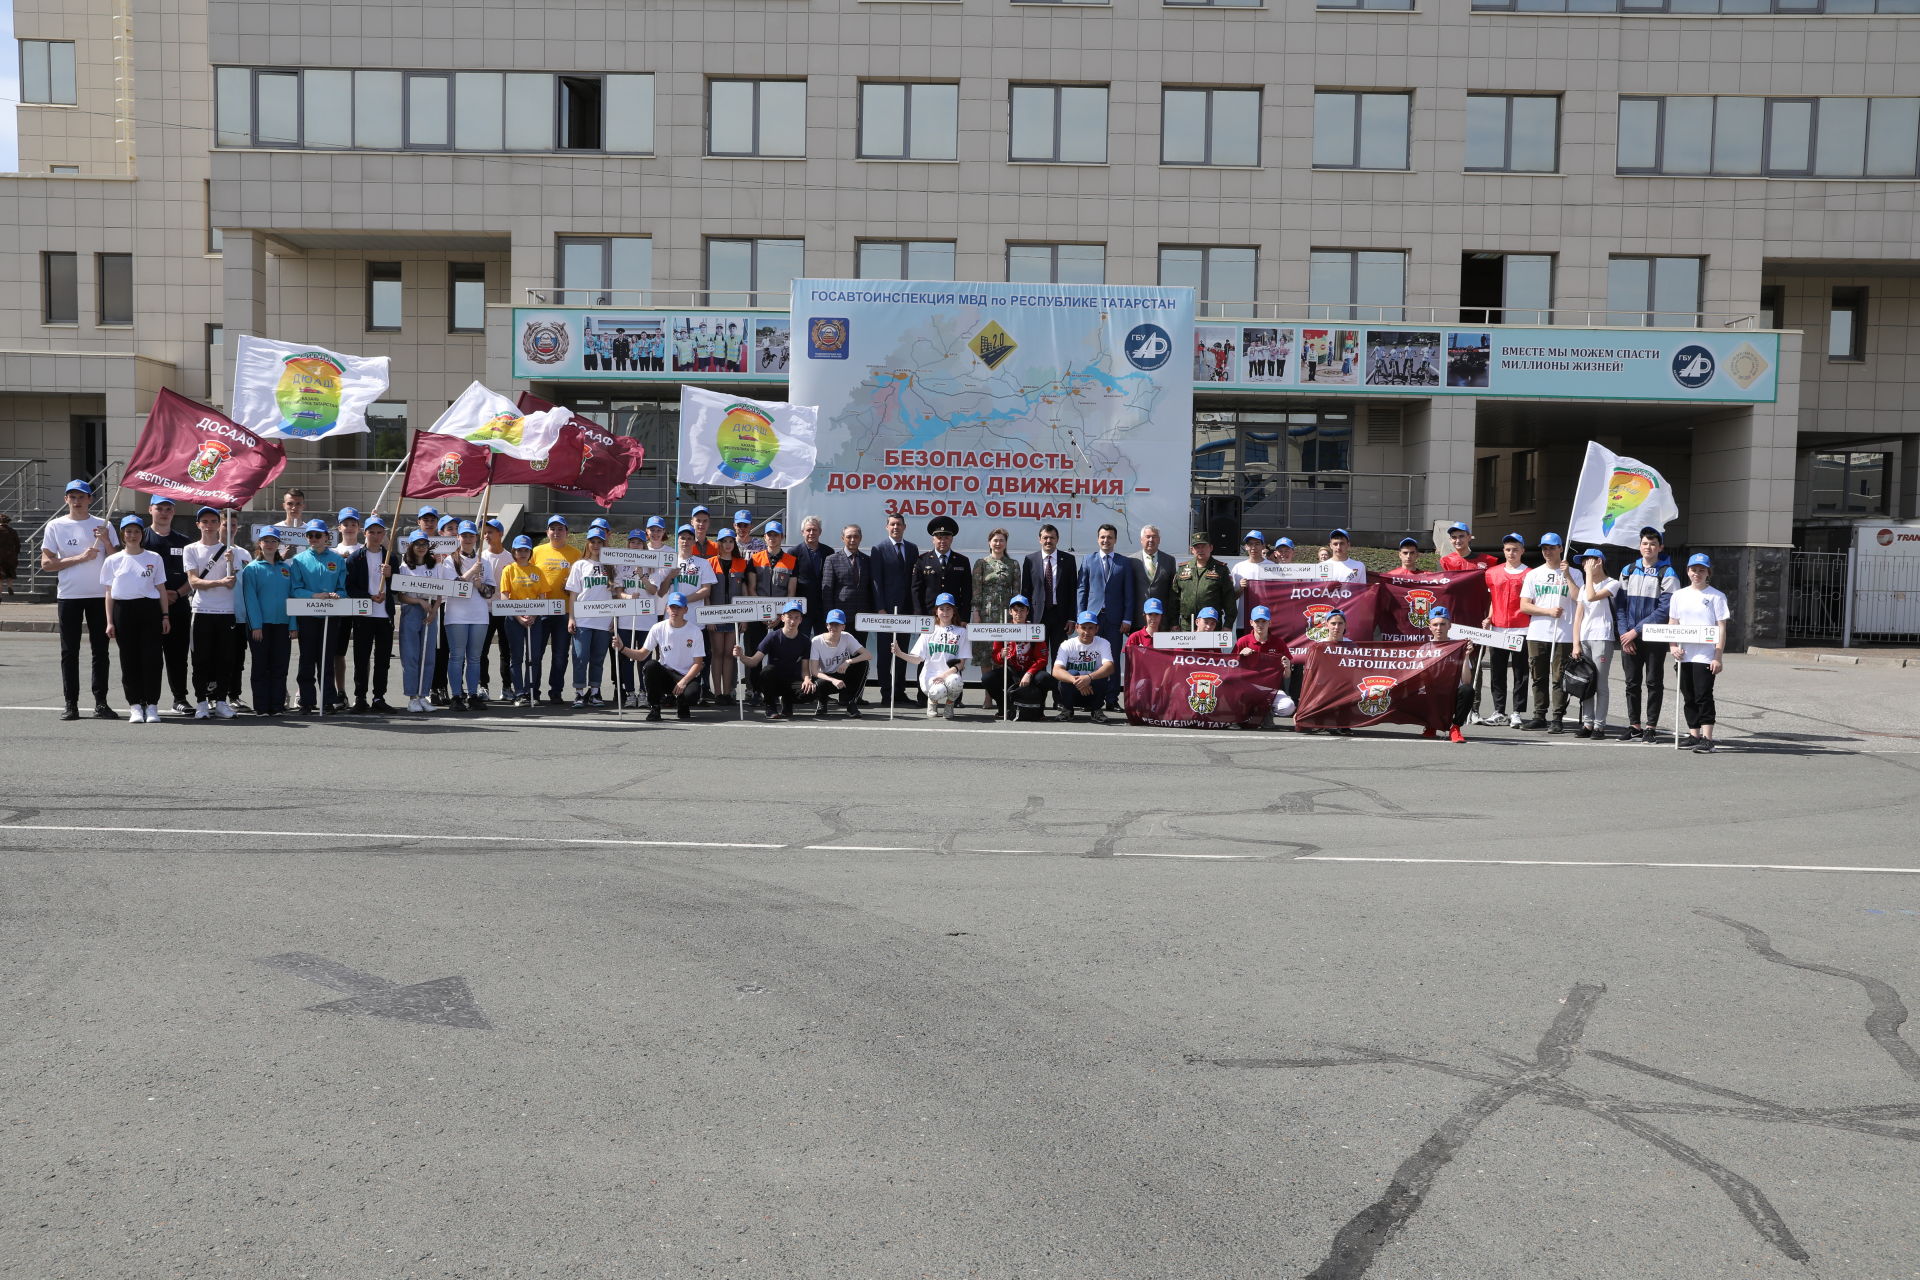 В Республике Татарстан юноши и девушки приняли участие в конкурсе водительского мастерства